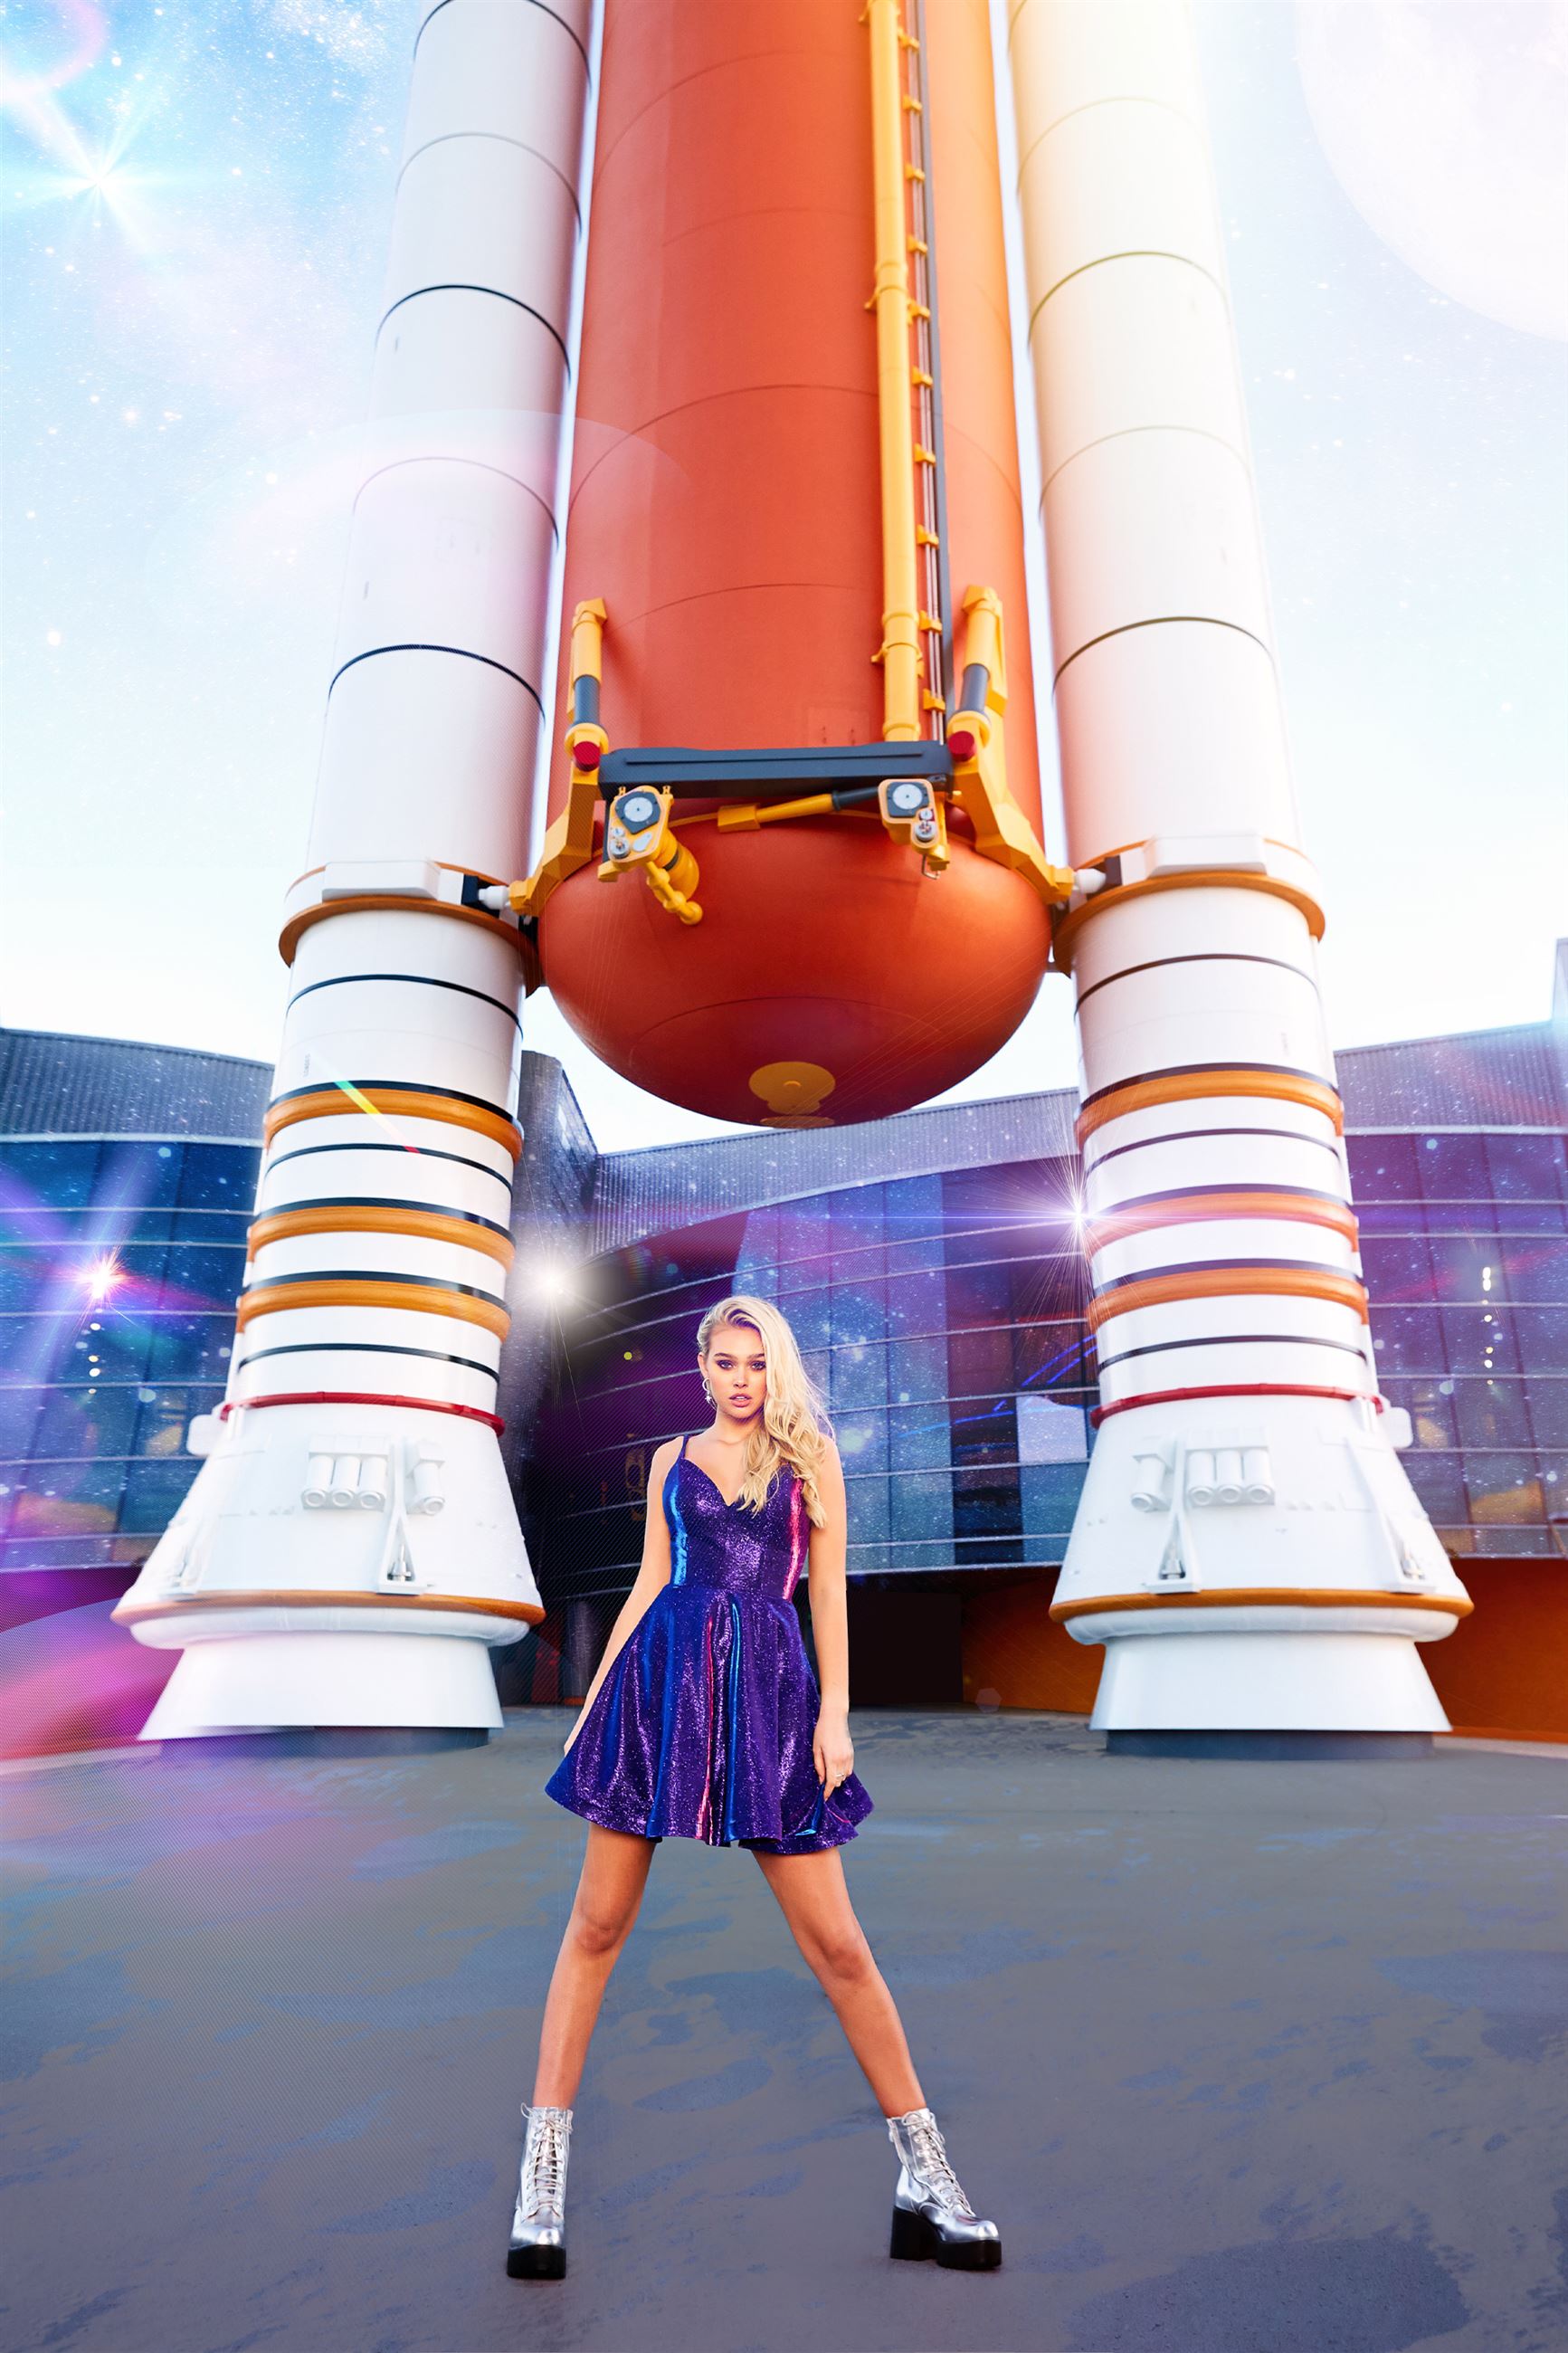 Blonde model in front of rocket wearing short purple dress